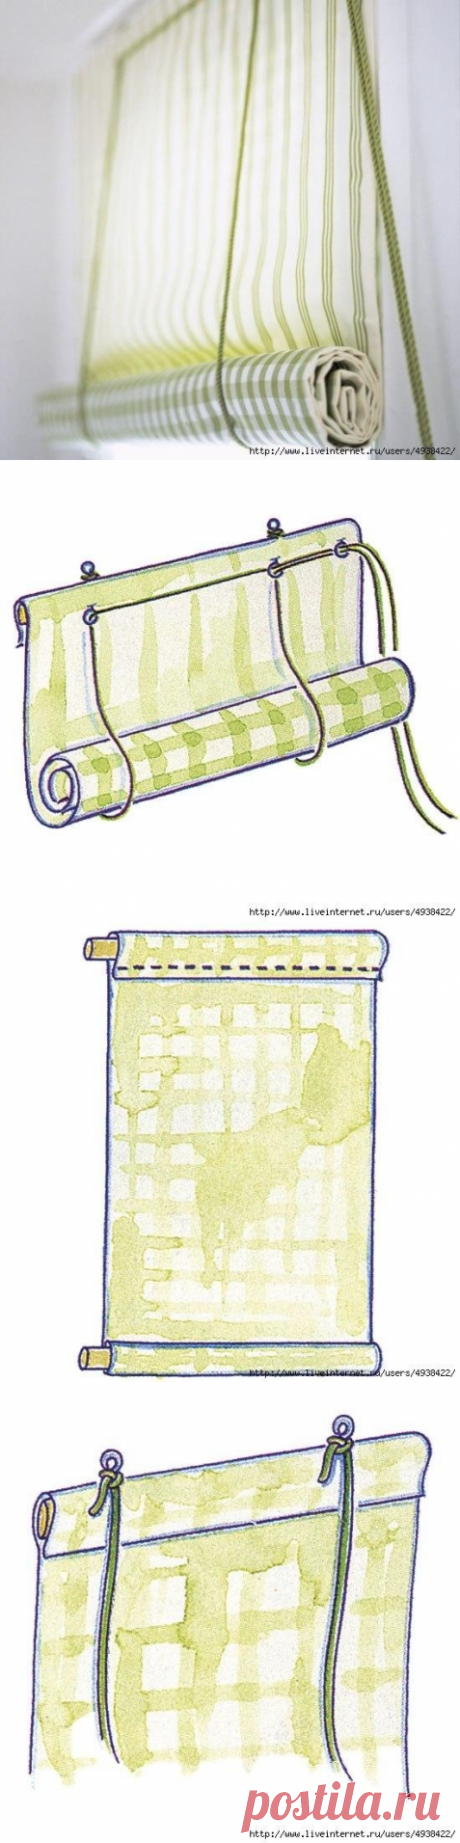 Рулонная штора на пластиковое окно. / Прочие виды рукоделия / Шитье